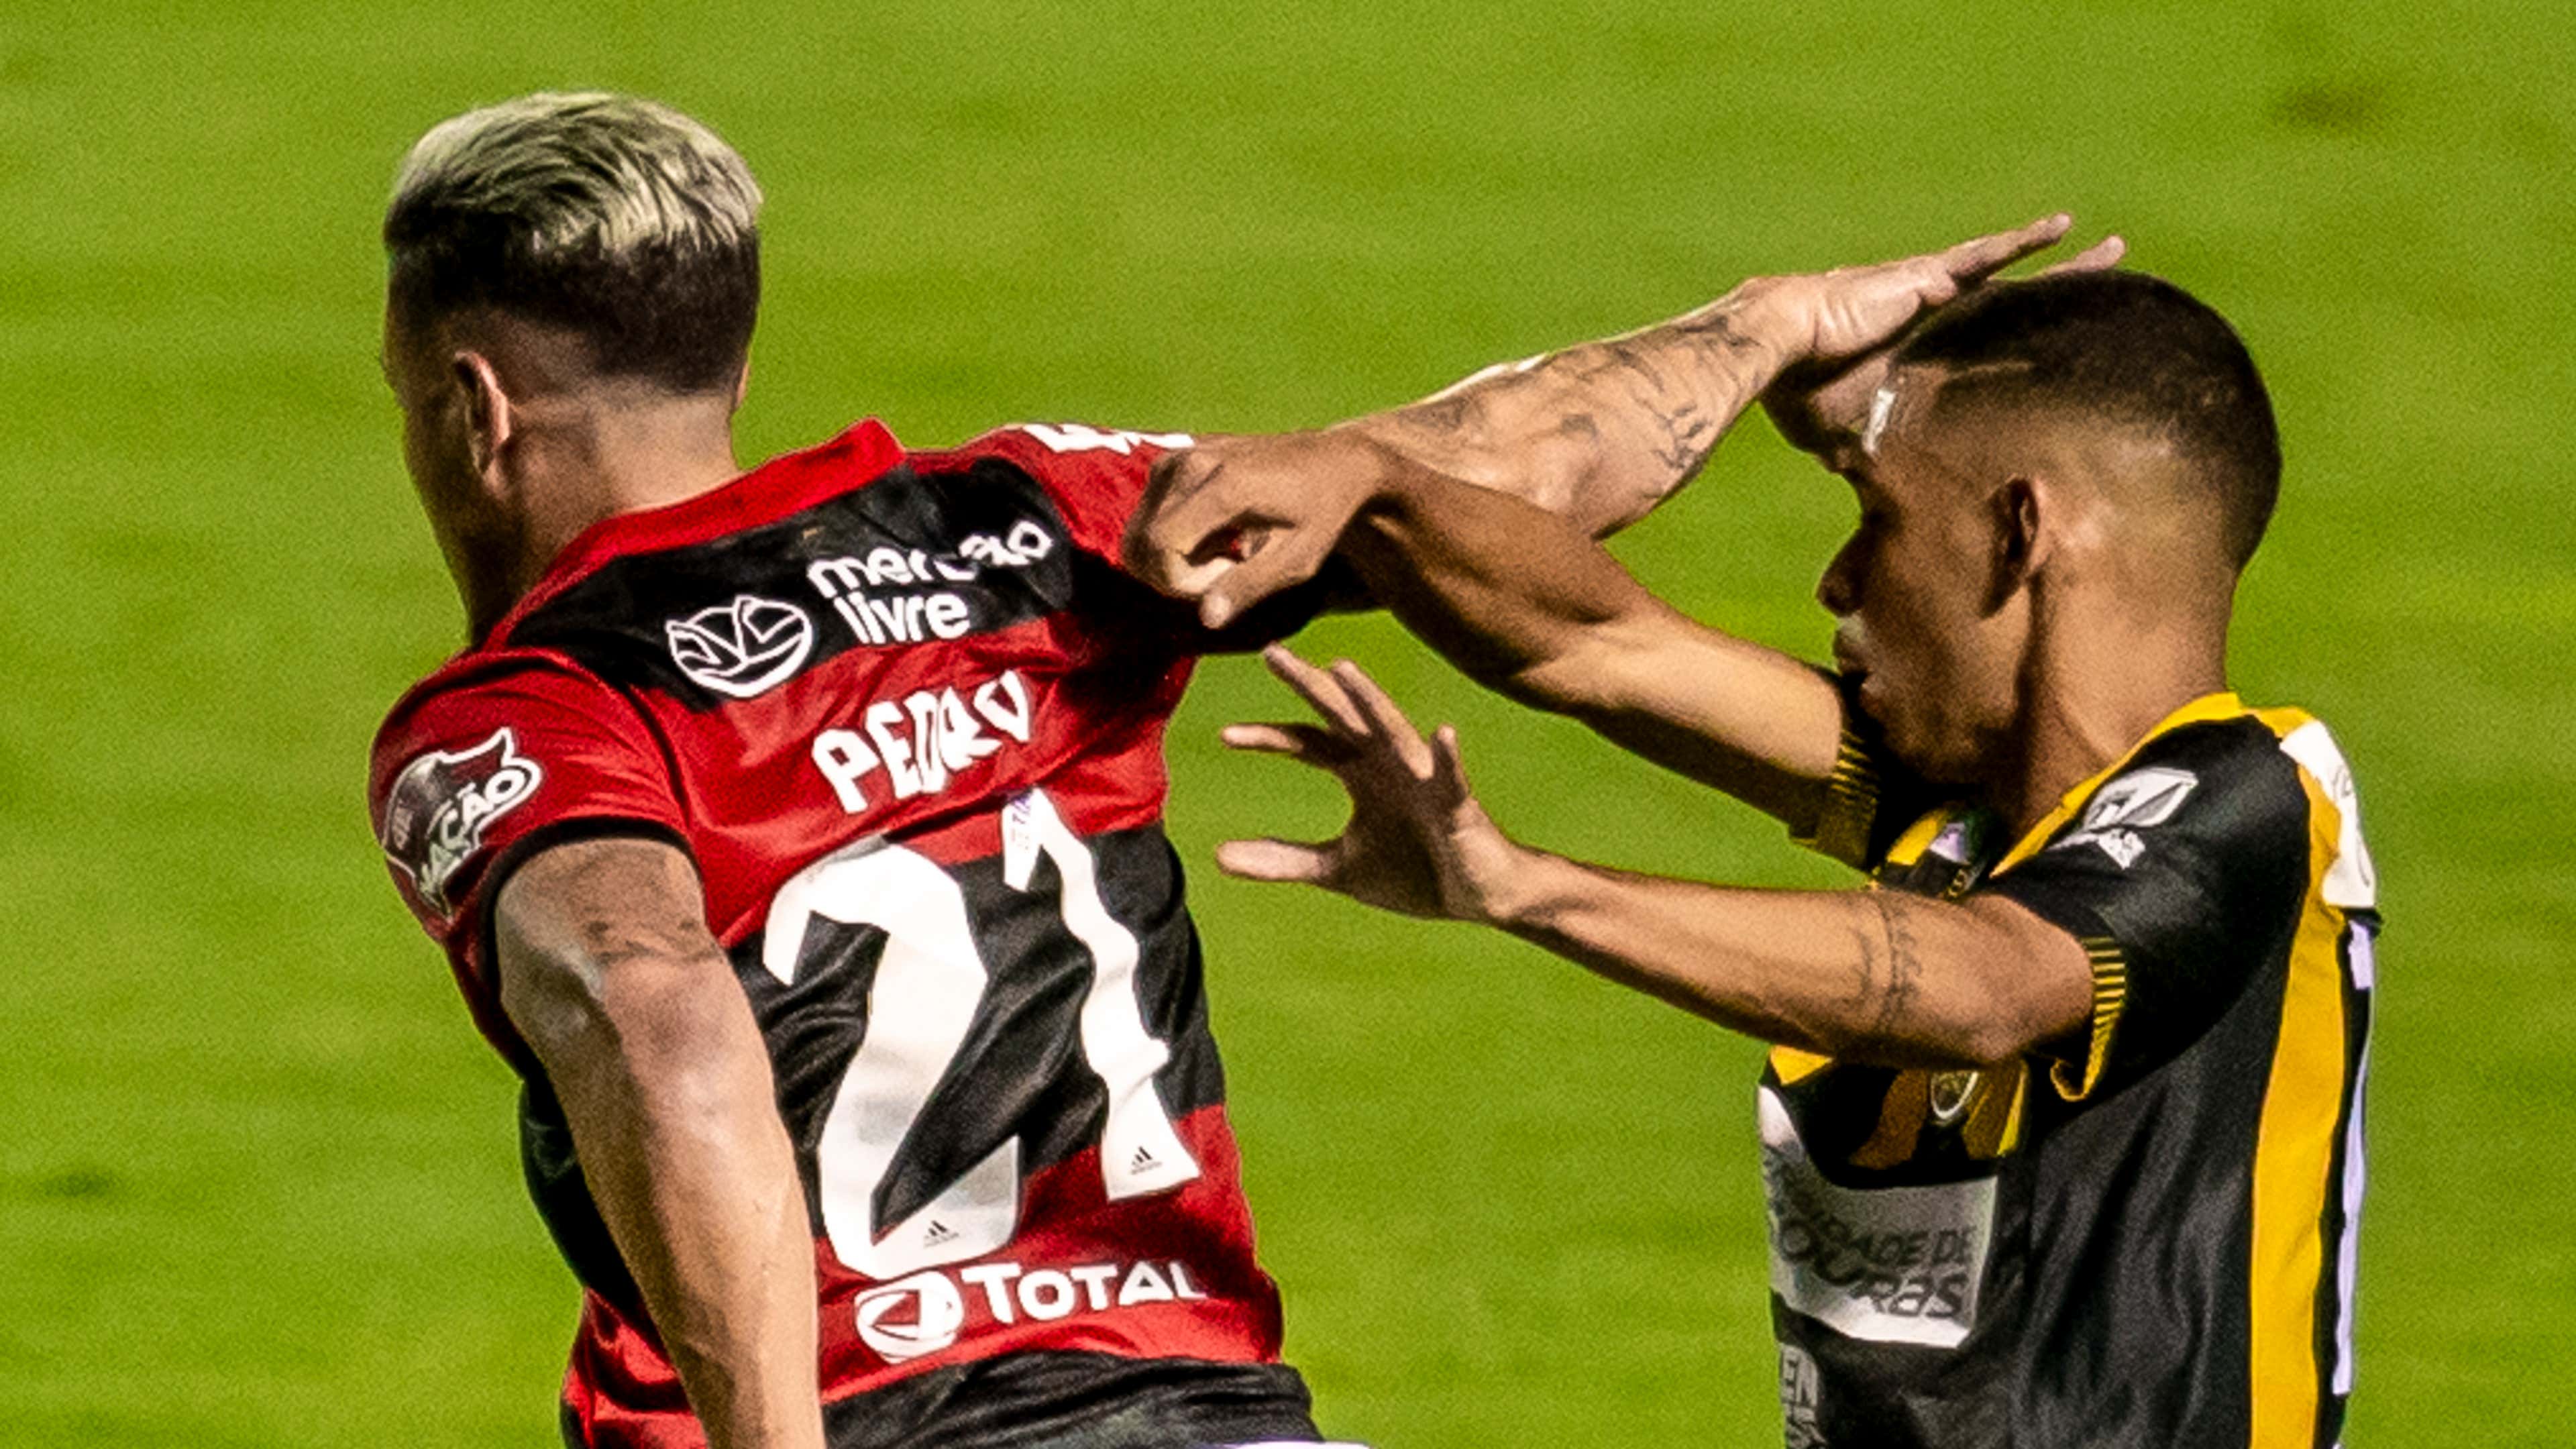 TEMPO REAL: acompanhe todos os lances da partida entre Flamengo e